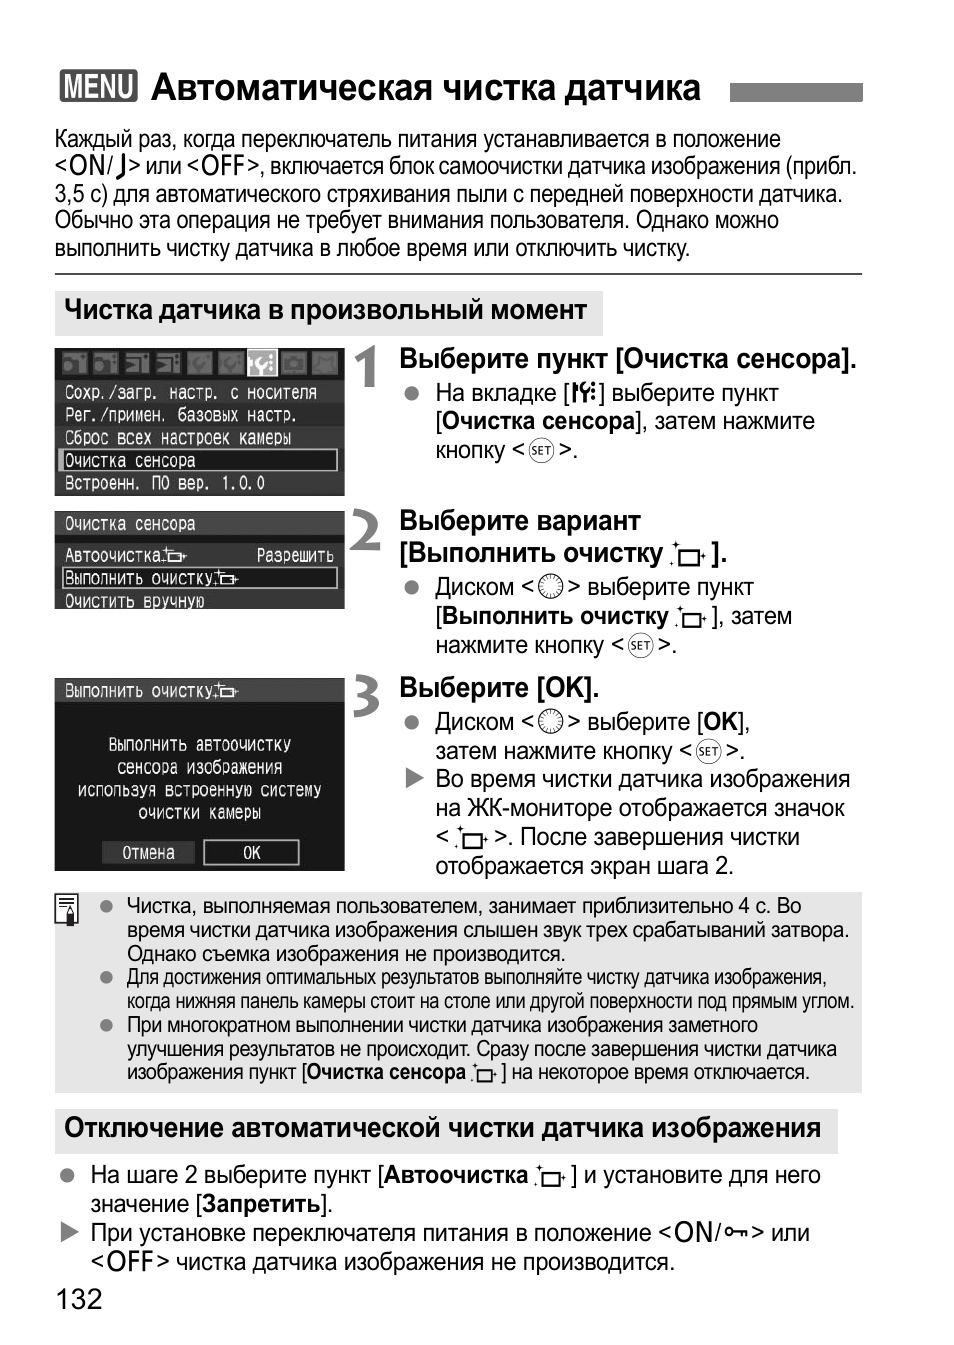 3автоматическая чистка датчика | Инструкция по эксплуатации Canon EOS-1D Mark III | Страница 132 / 212